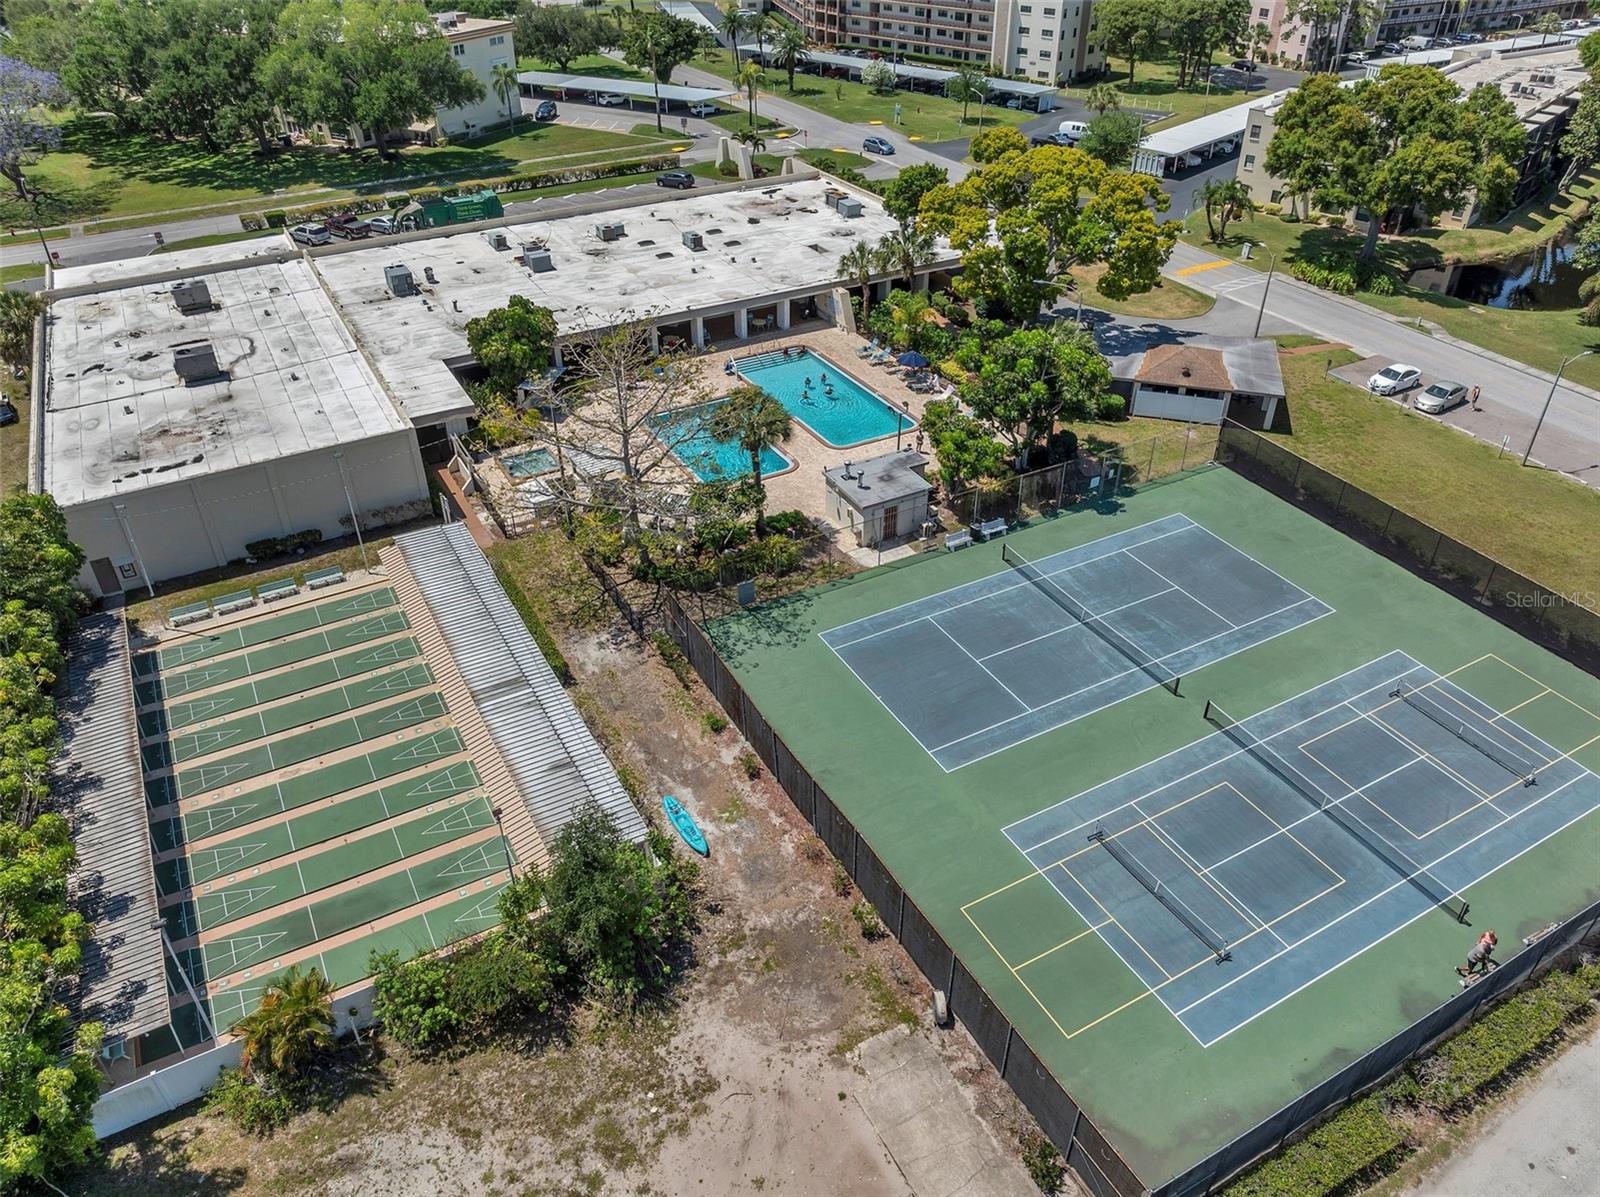 Tennis courts, bocce ball, shuffleboard